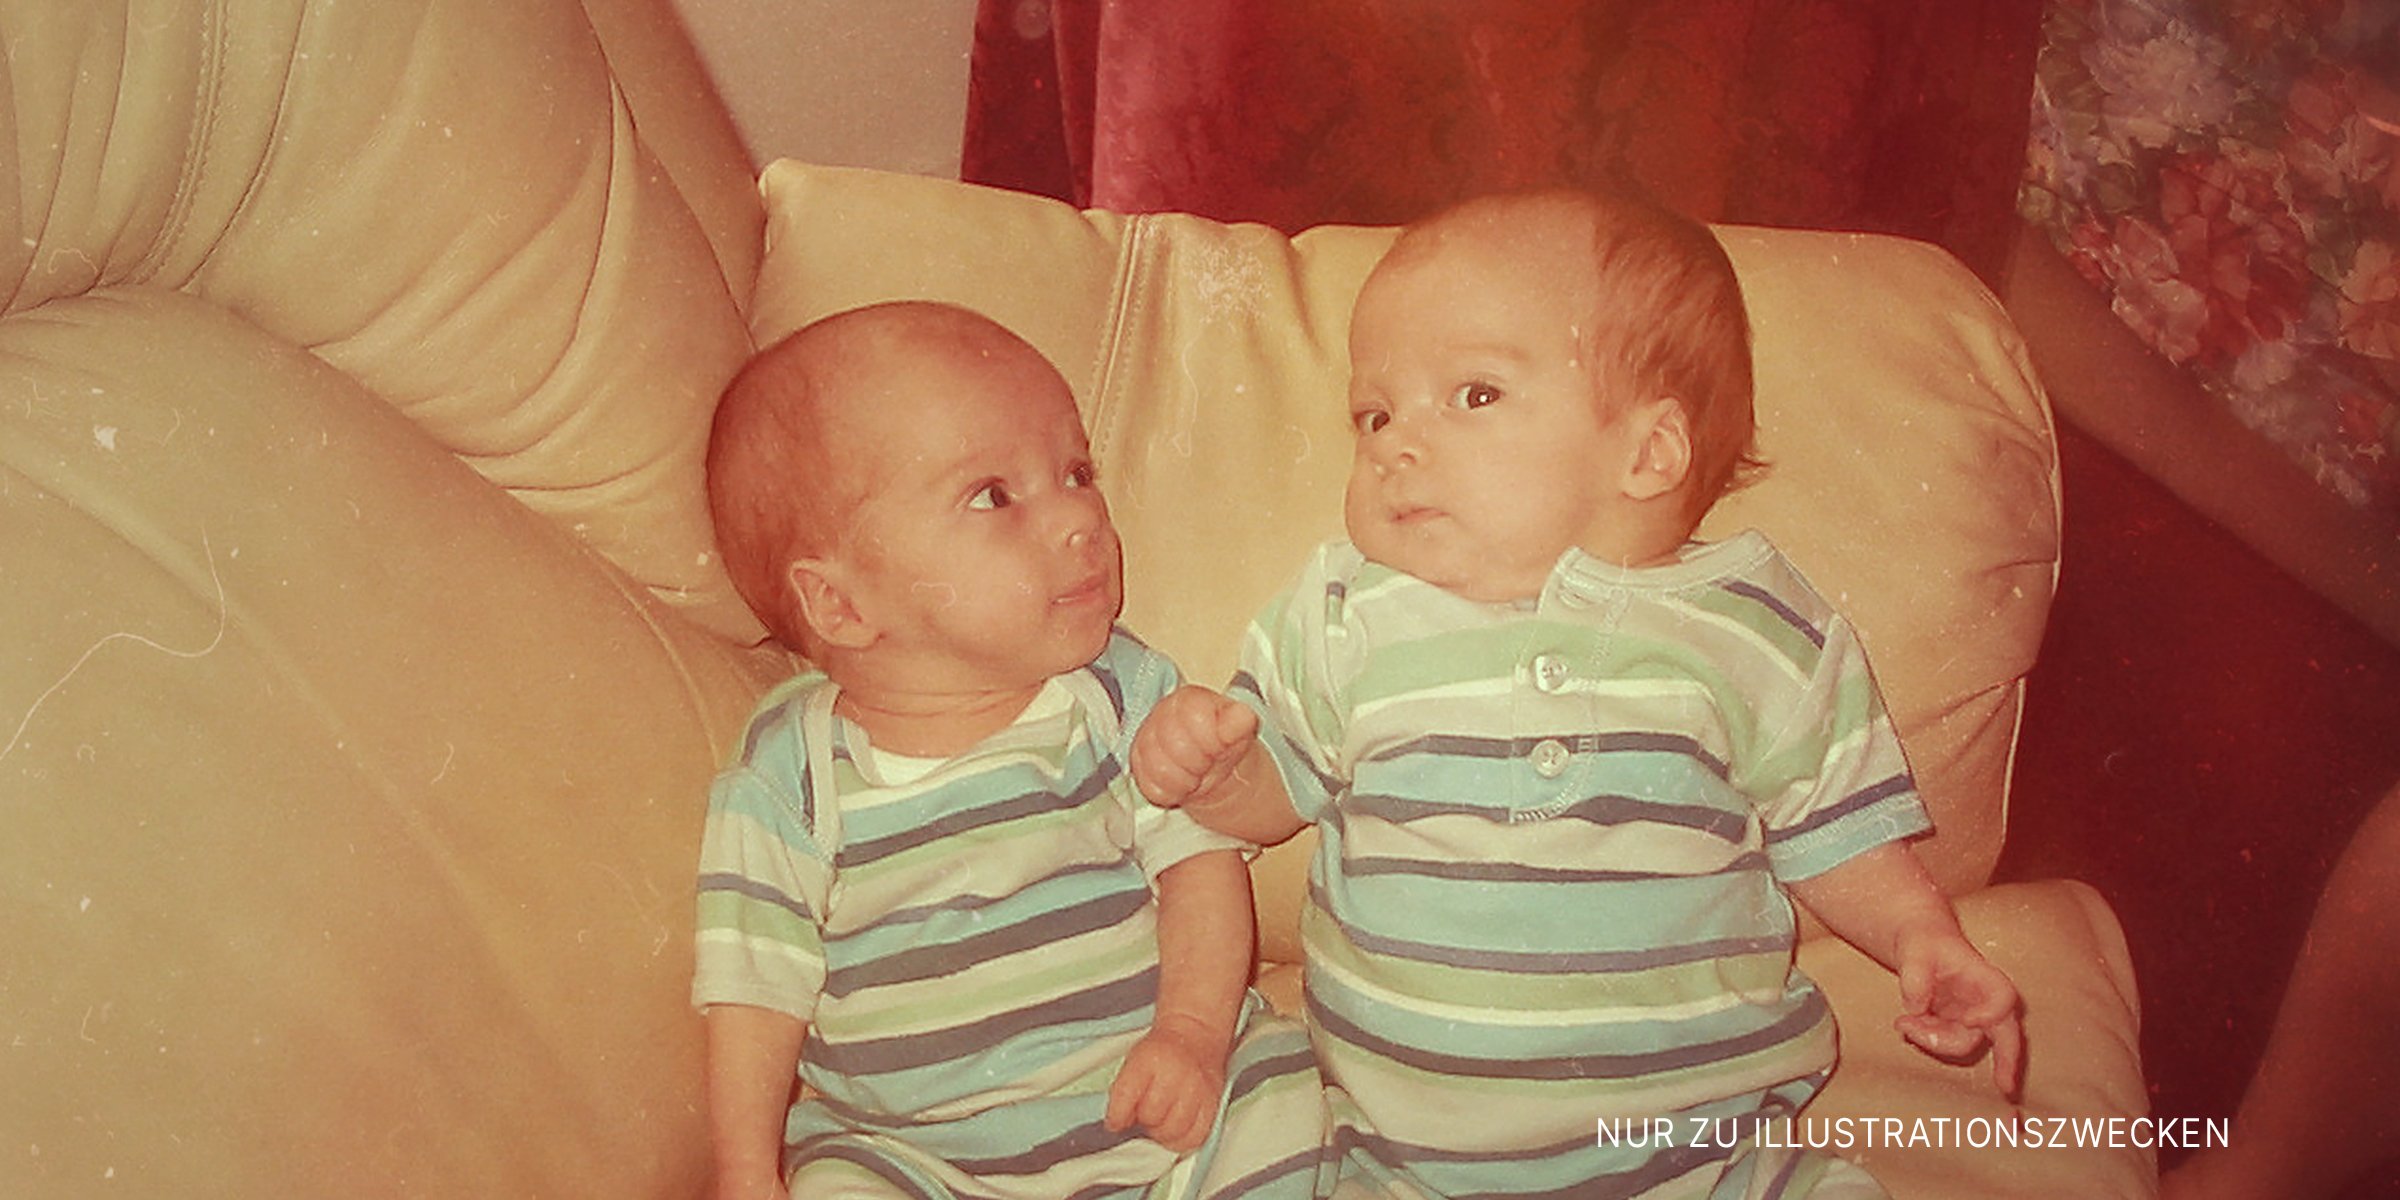 Zwillingsbabys auf einer Couch. | Quelle: Flickr/goldberg (CC BY 2.0)